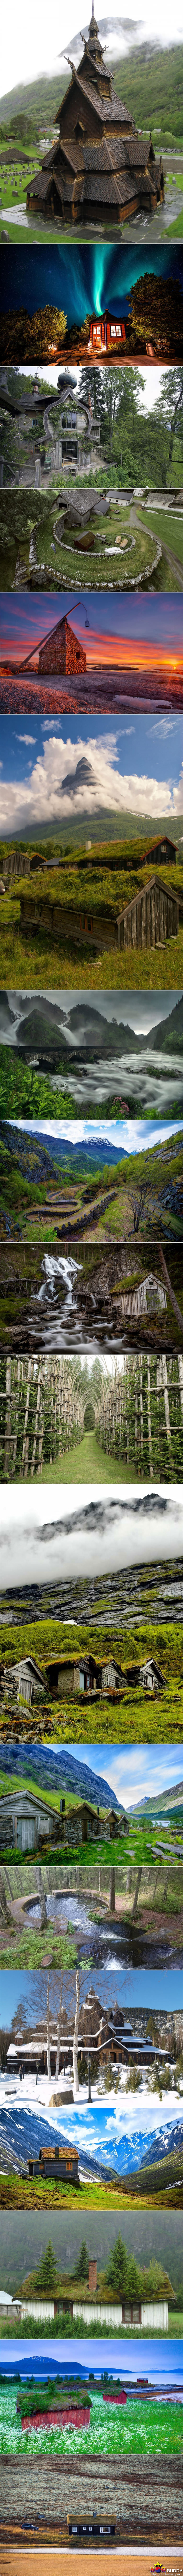 신비한 노르웨이의 자연과 집